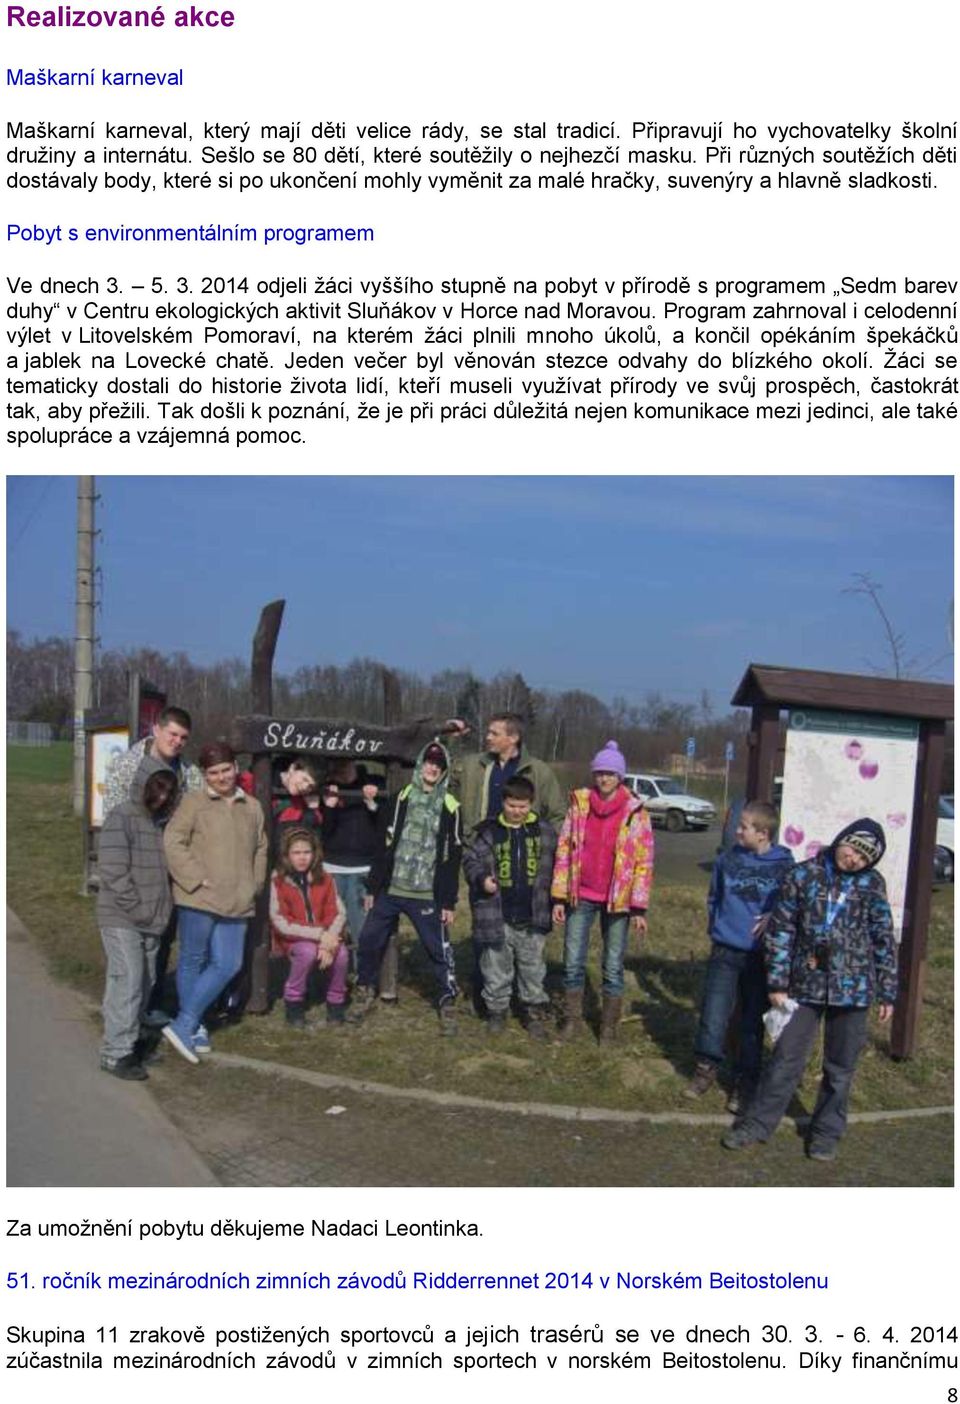 Pobyt s environmentálním programem Ve dnech 3. 5. 3. 2014 odjeli žáci vyššího stupně na pobyt v přírodě s programem Sedm barev duhy v Centru ekologických aktivit Sluňákov v Horce nad Moravou.